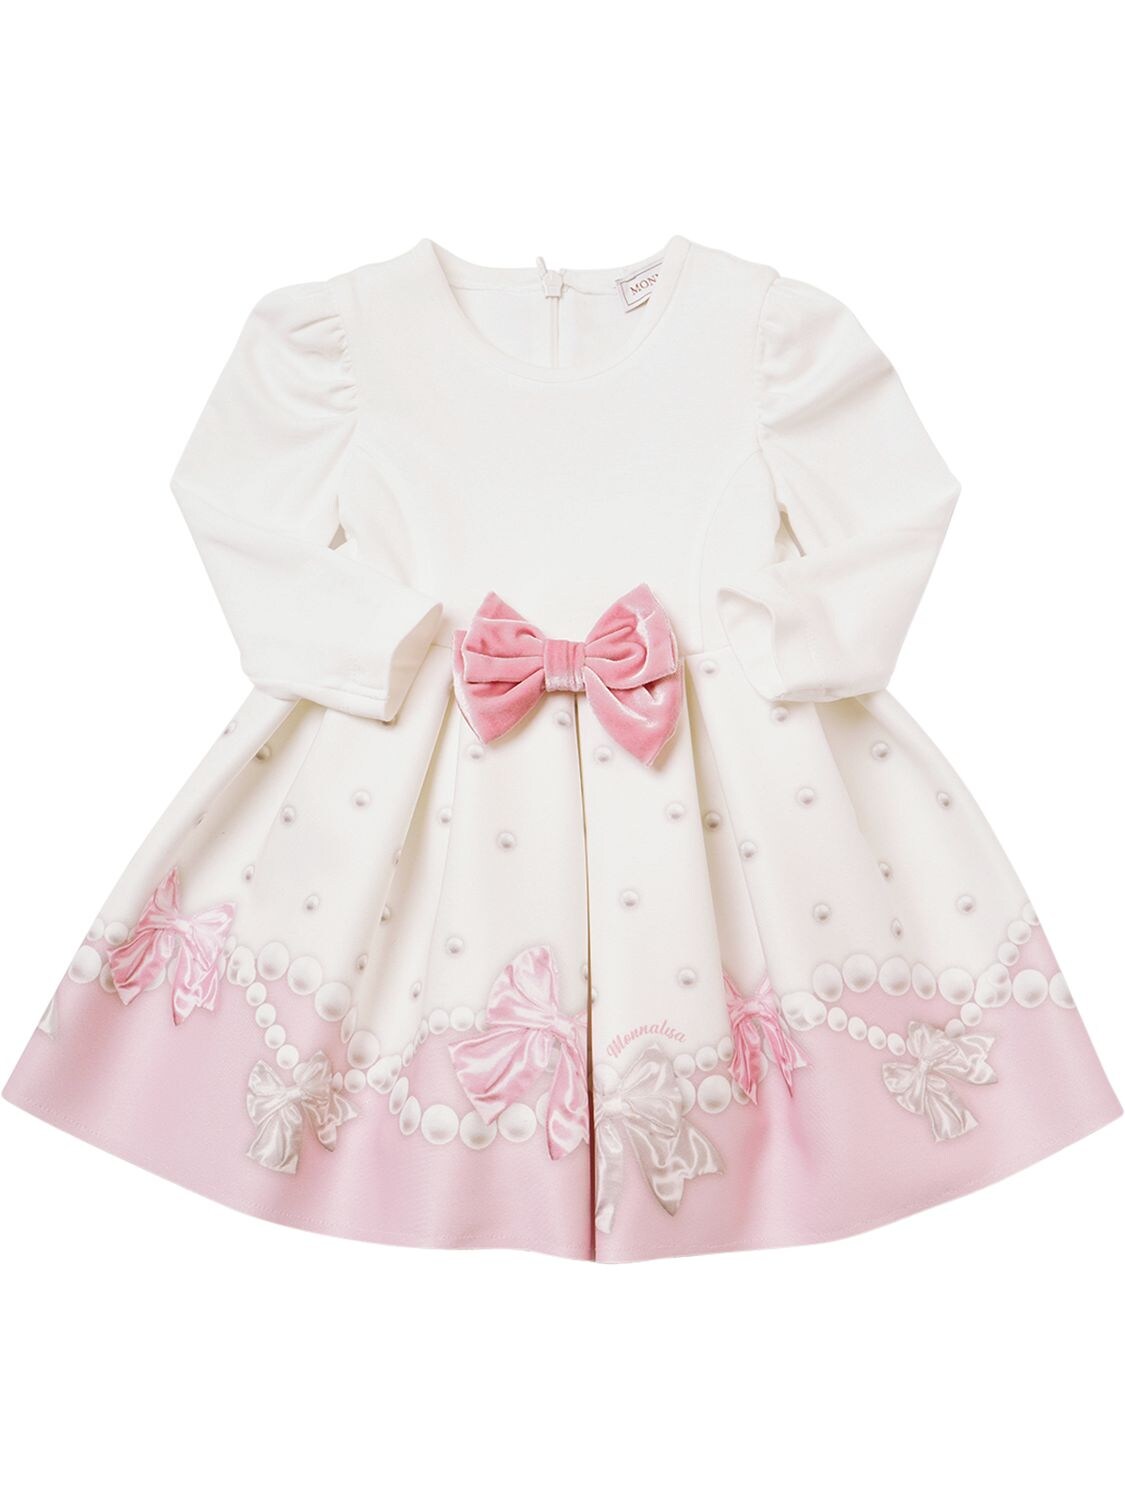 Monnalisa Kids' Bow Print Punto Milano Dress In White,pink